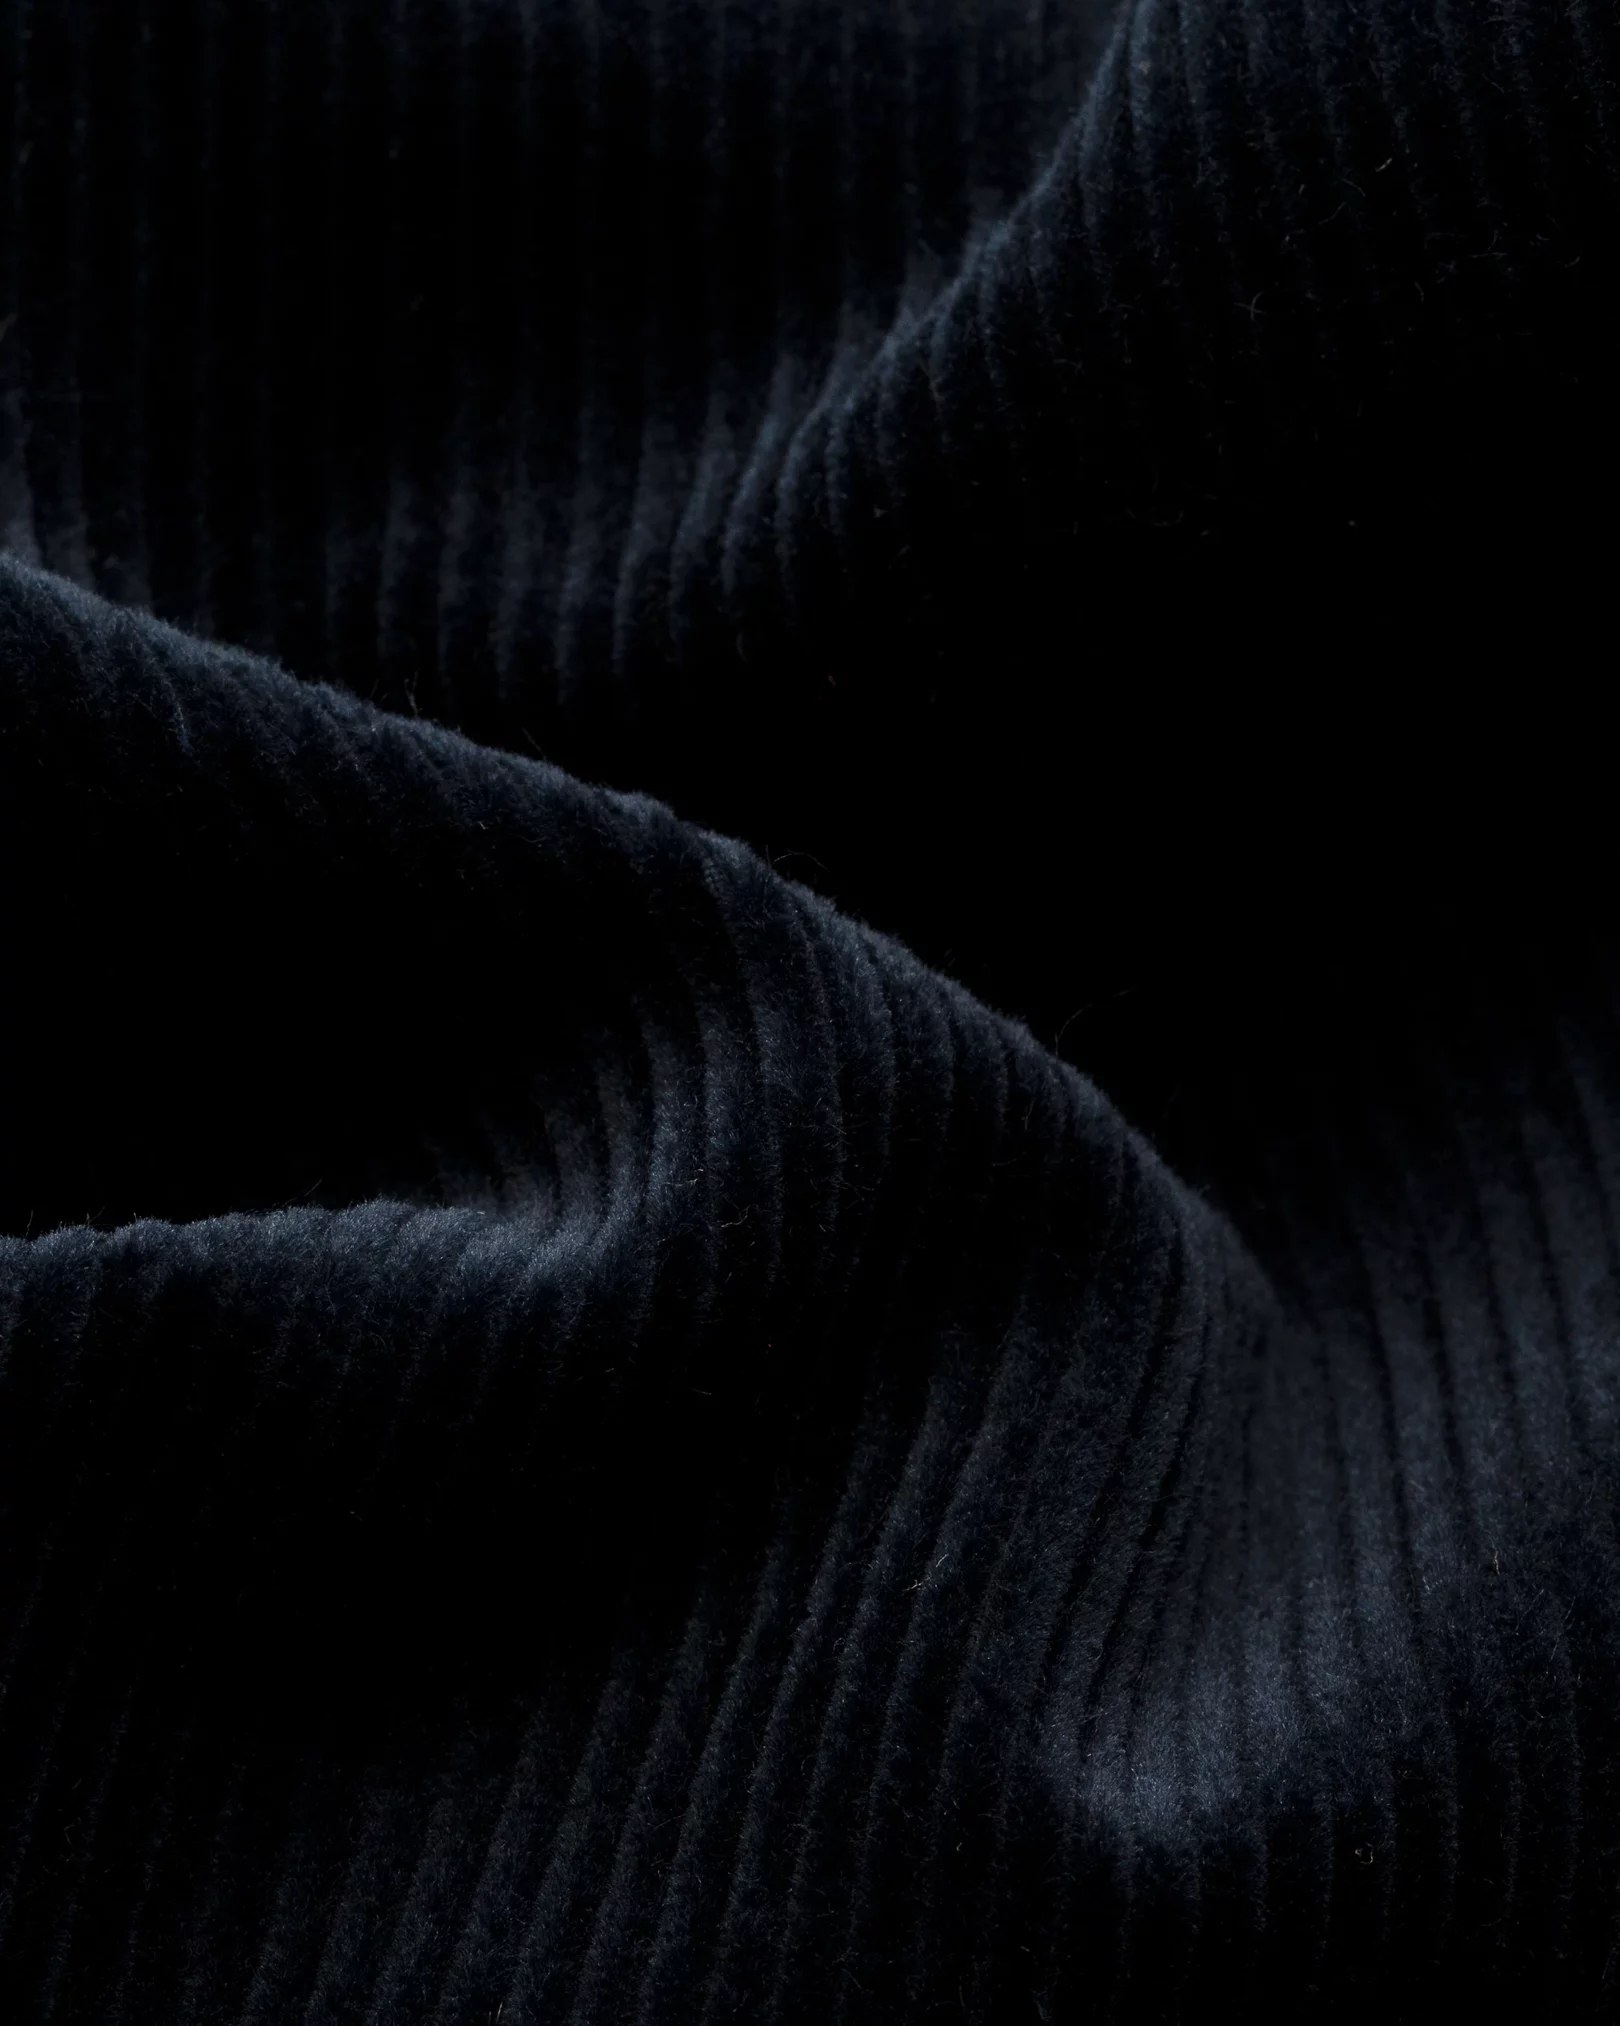 Eton - dark blue corduroy overshirt turn down straight sleeve end regular